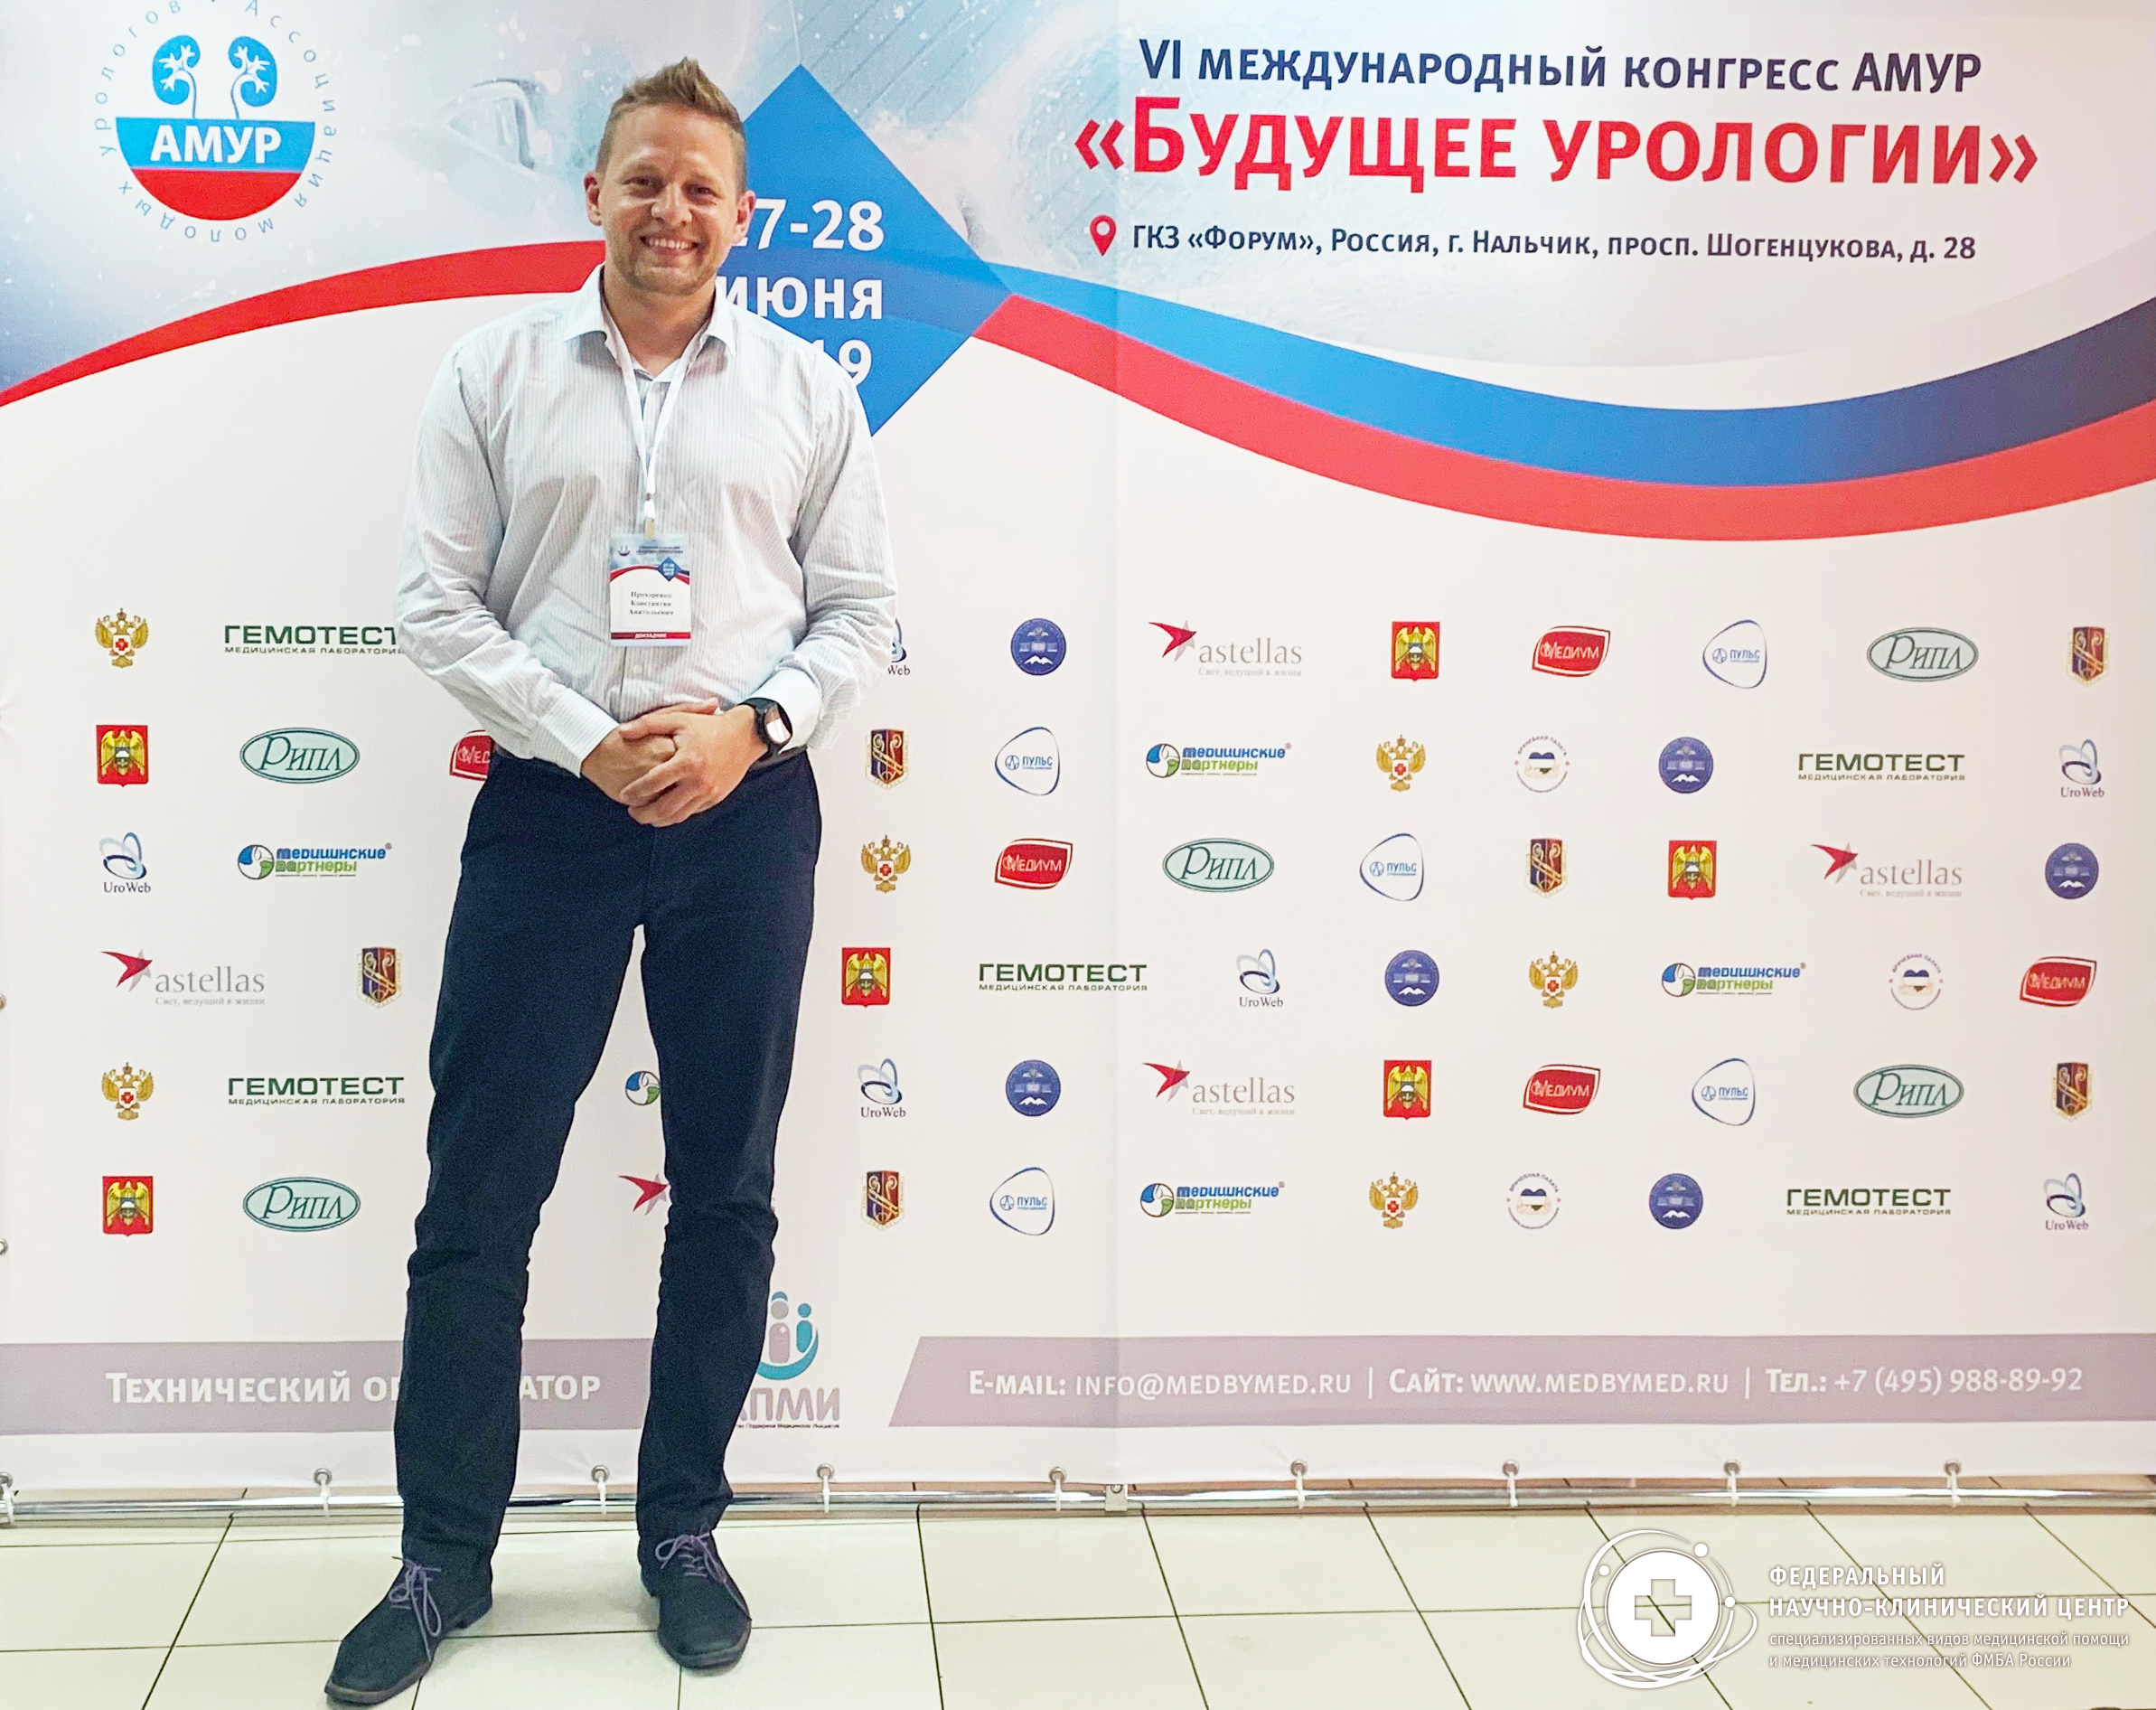 27-28 июня 2019 года состоялся VI международный конгресс АМУР (Ассоциация молодых урологов России) в Кабардино-Балкарской республике г. Нальчик с участием специалиста из ФНКЦ ФМБА России.